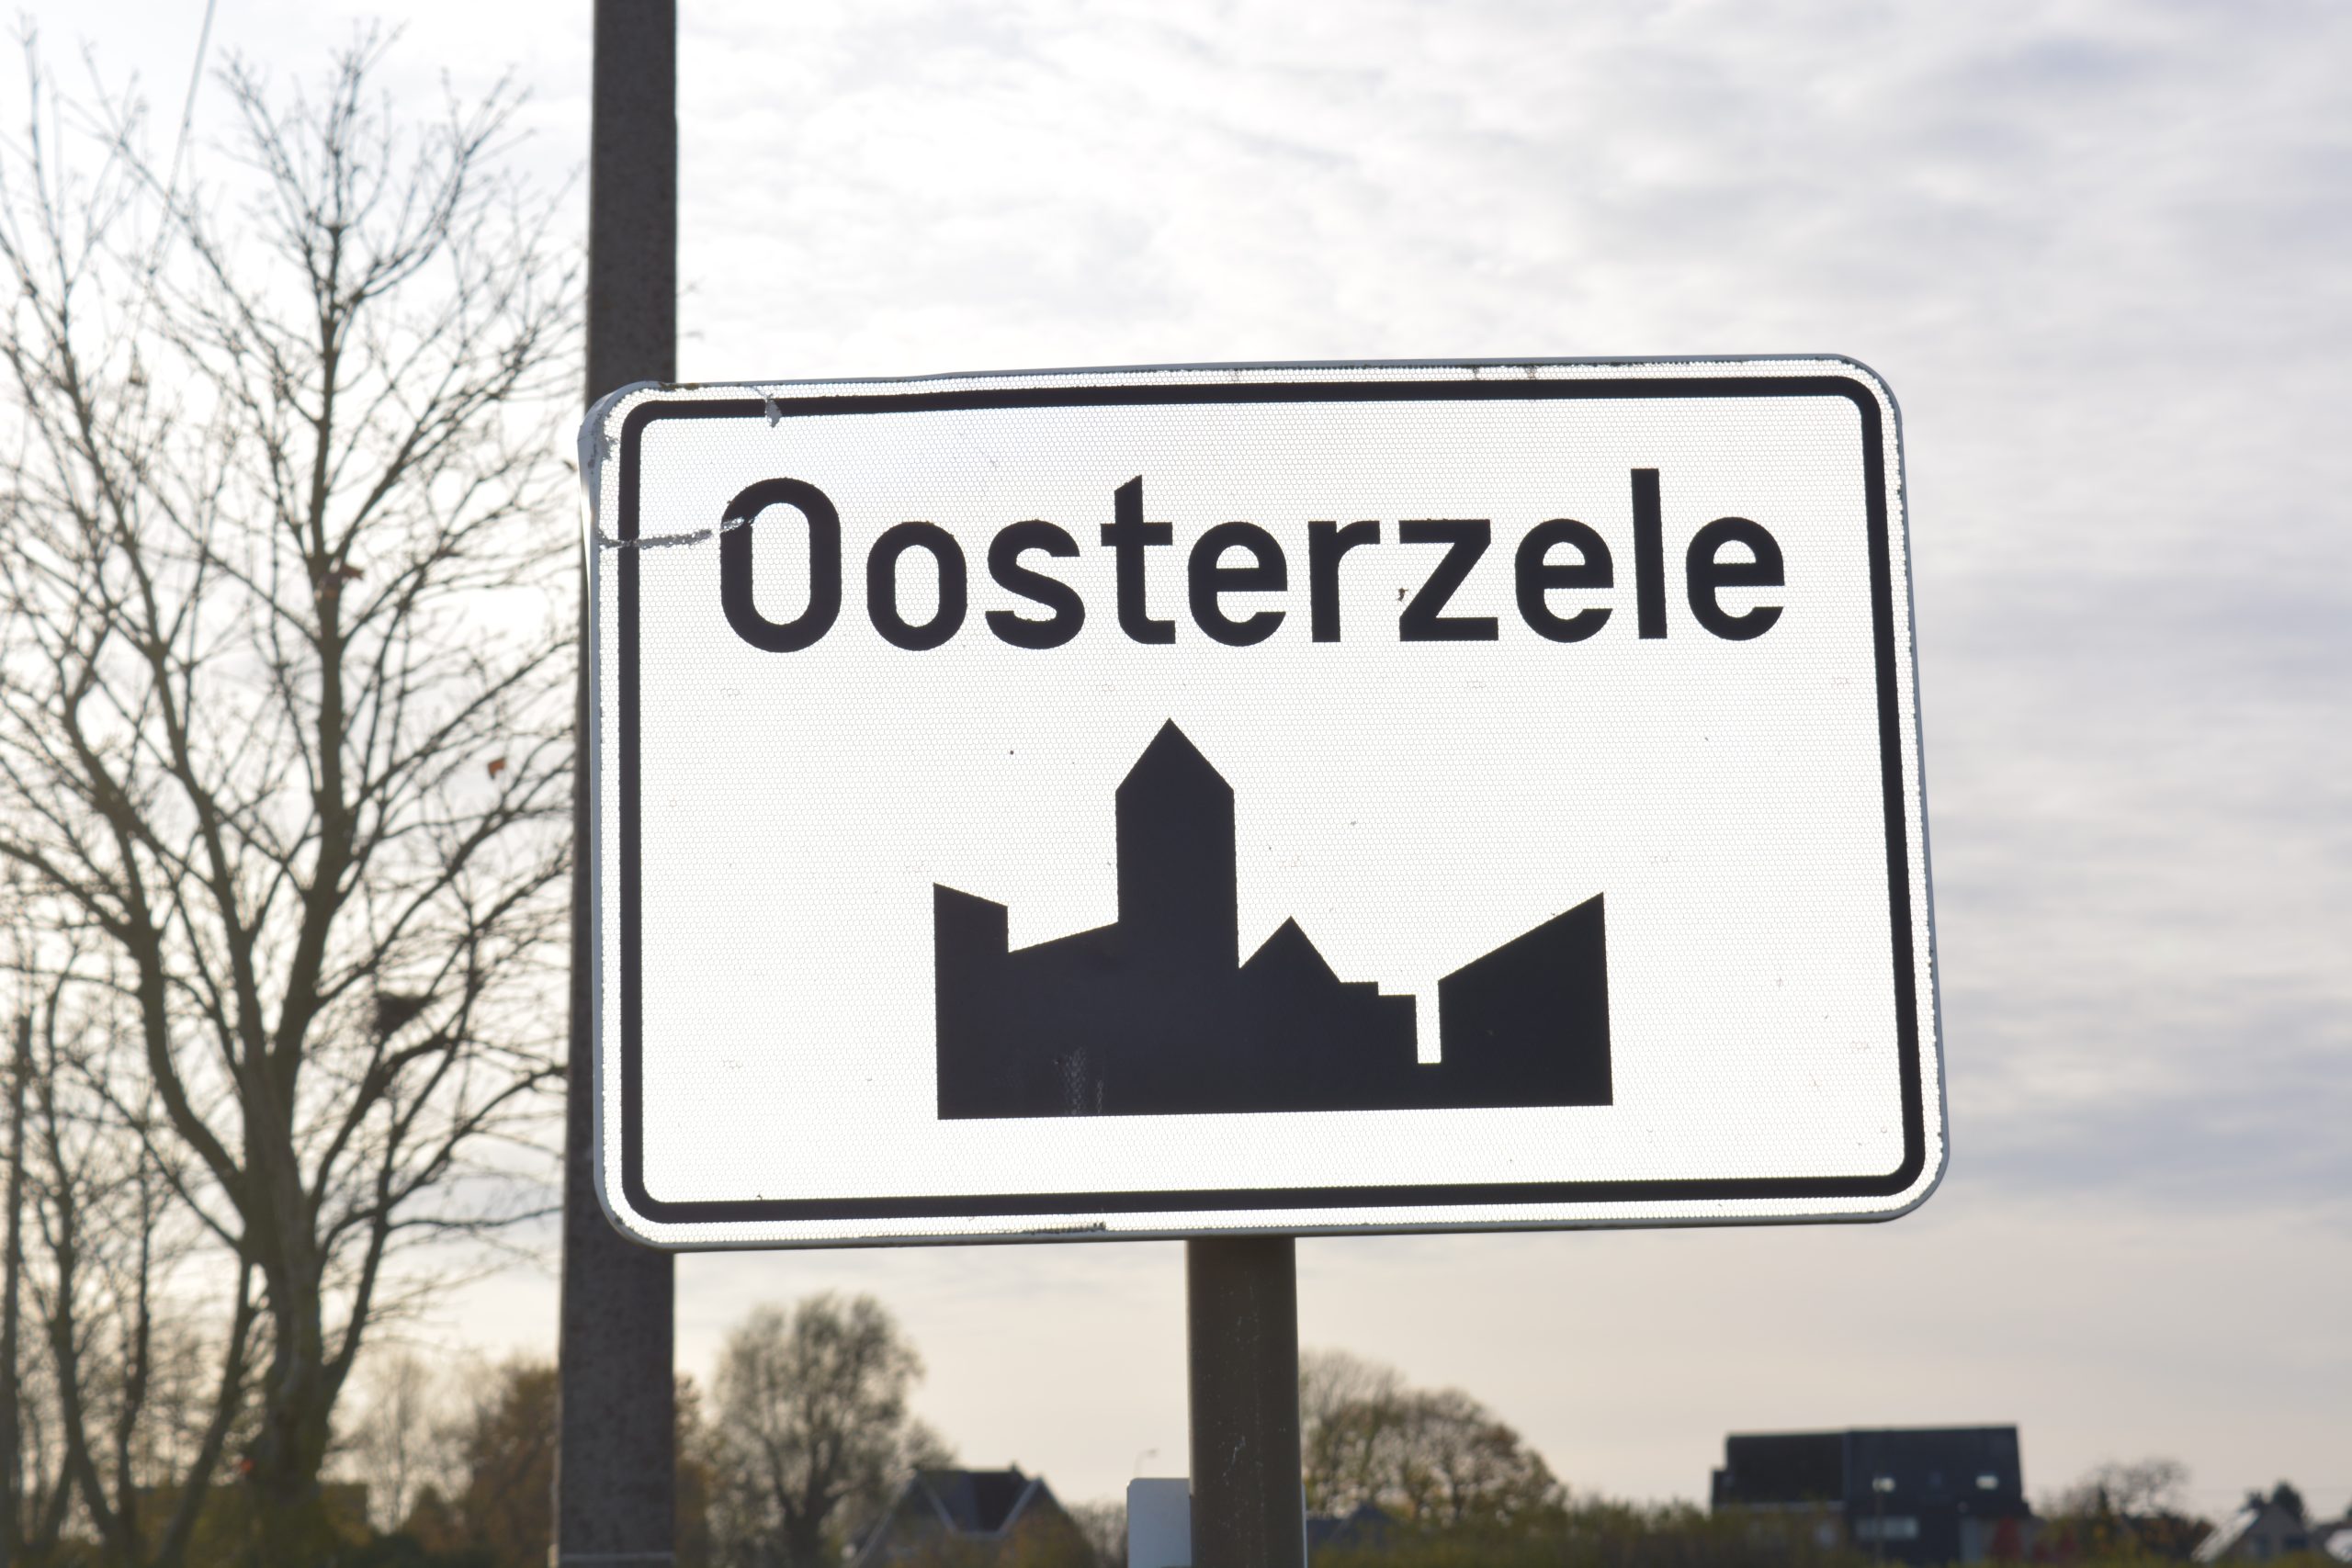 Nieuwe subsidies voor lokale economie in Oosterzele